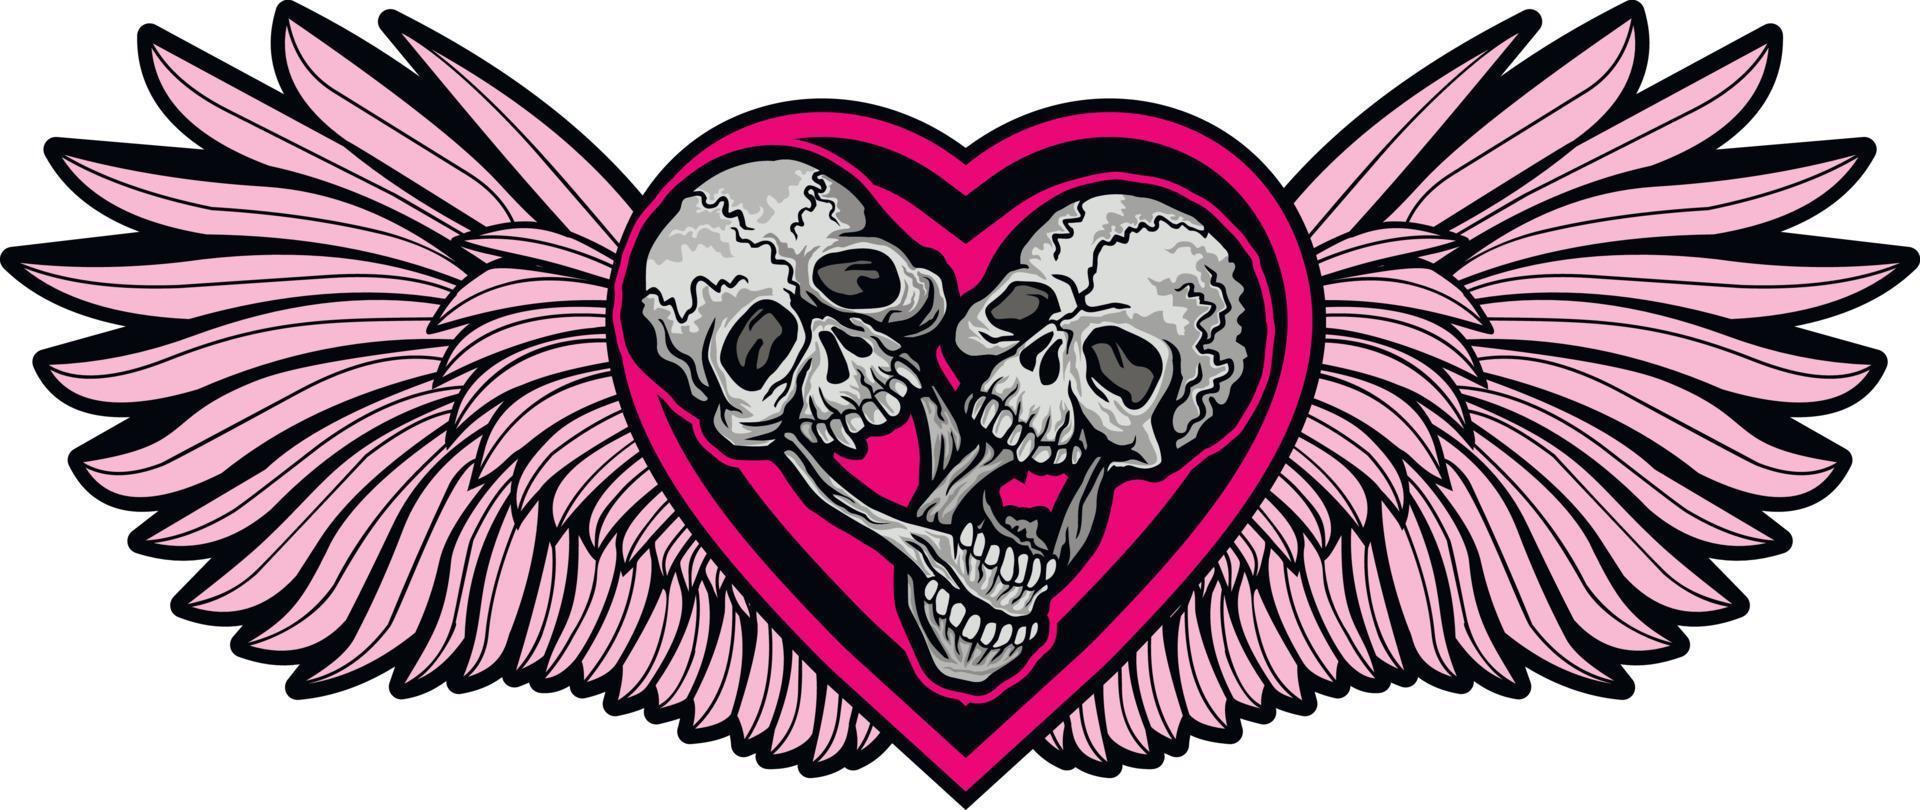 teschio di San Valentino con cuore, magliette grunge design vintage vettore